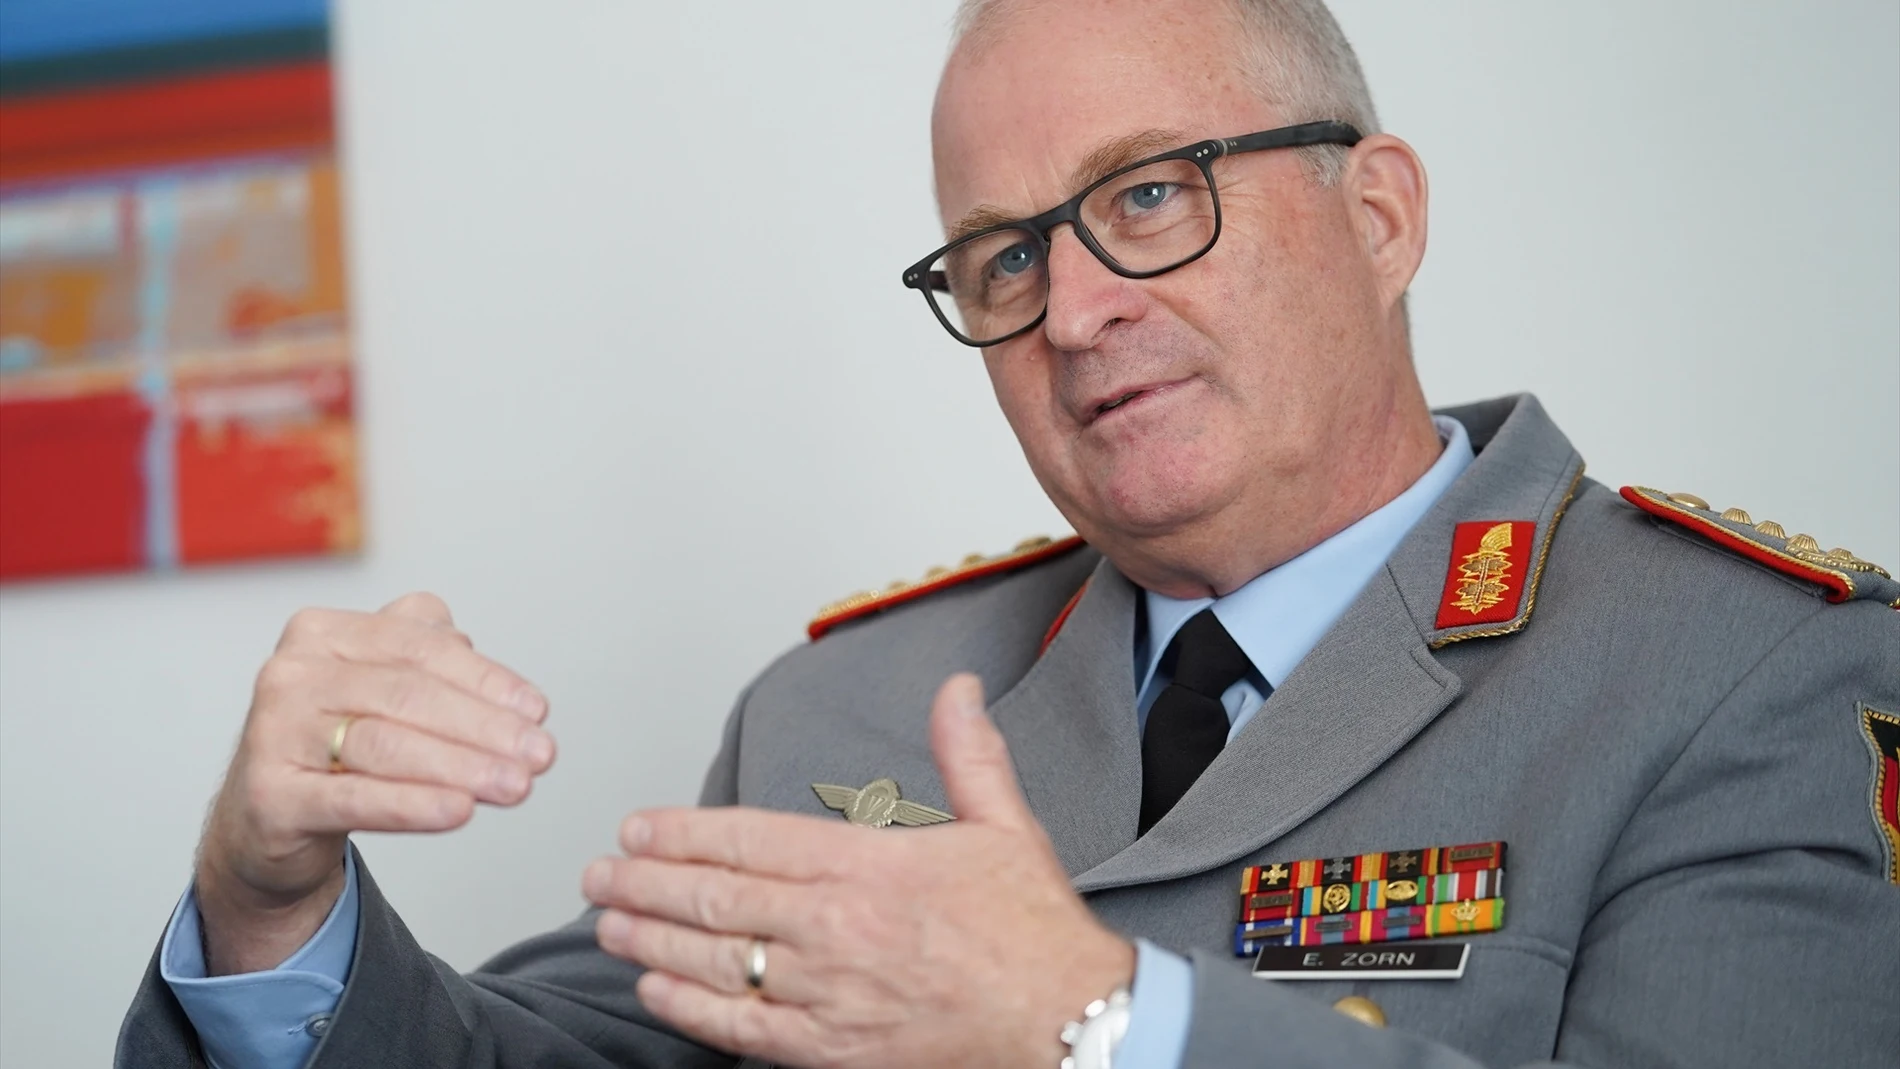 Eberhard Zorn durante una entrevista el Ministerio de Defensa alemán.